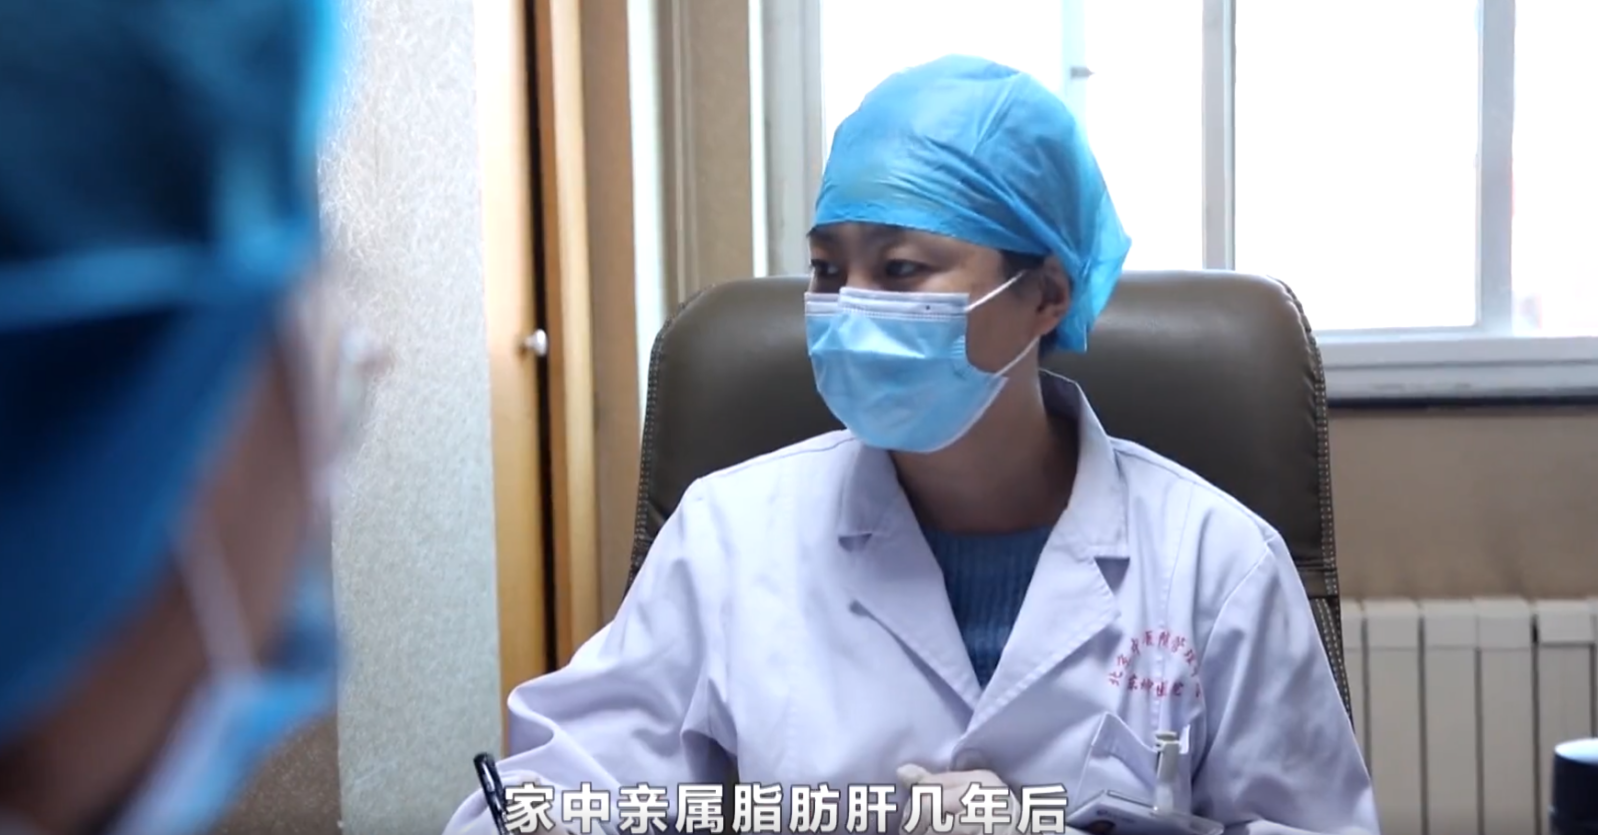 国医大师、东城中医医院特聘专家王庆国做客 健康北京 养肝就是养命